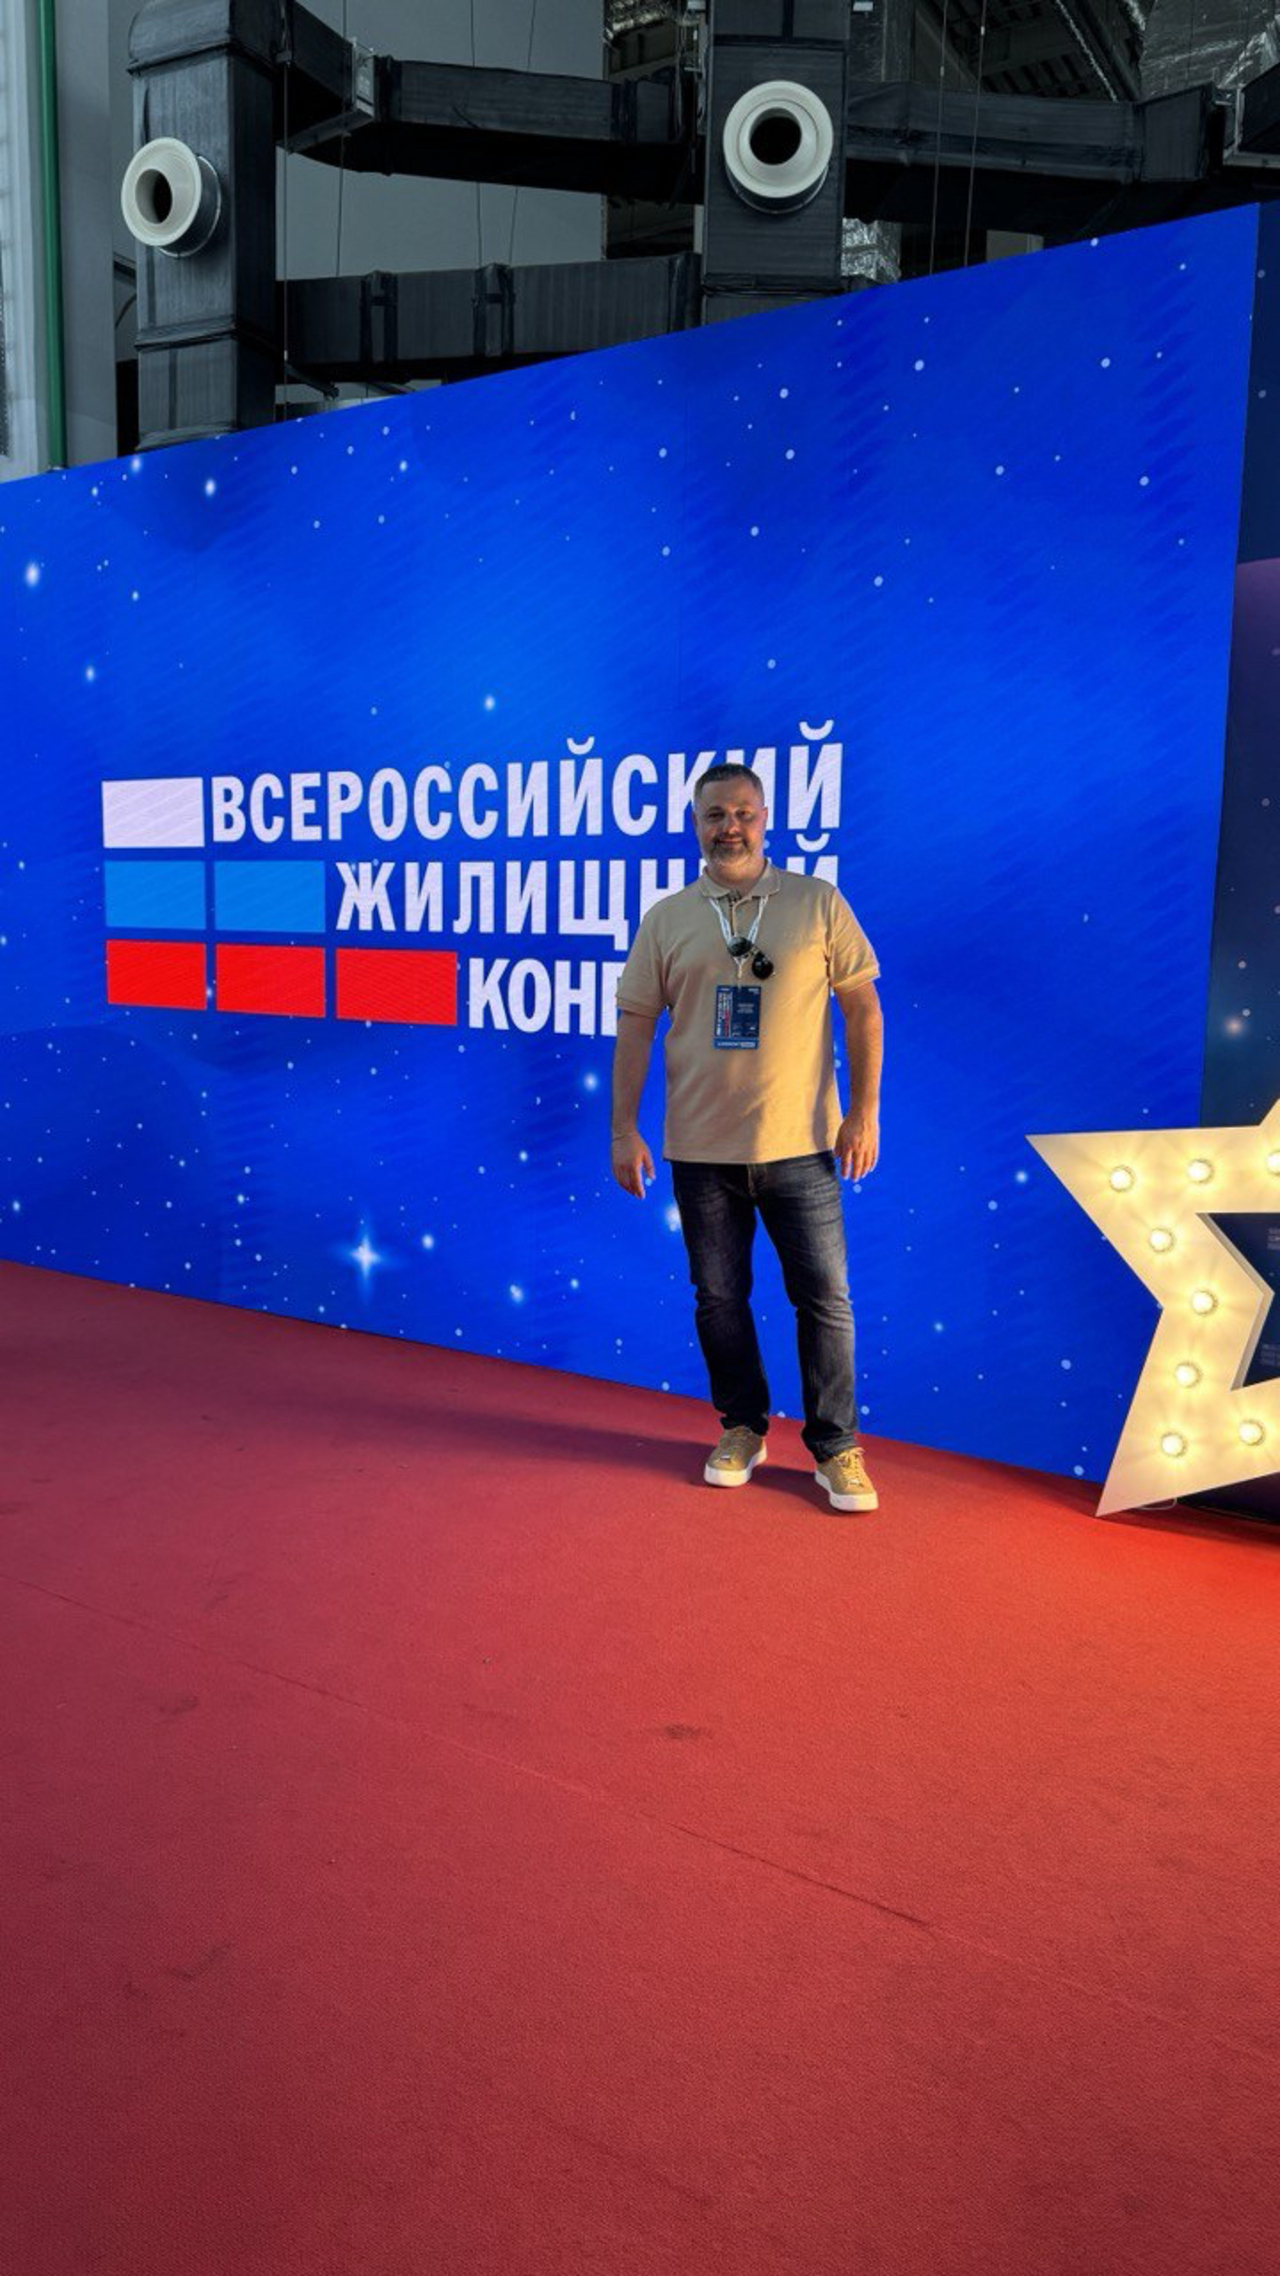 Всероссийский жилищный конгресс в Сочи — 20242